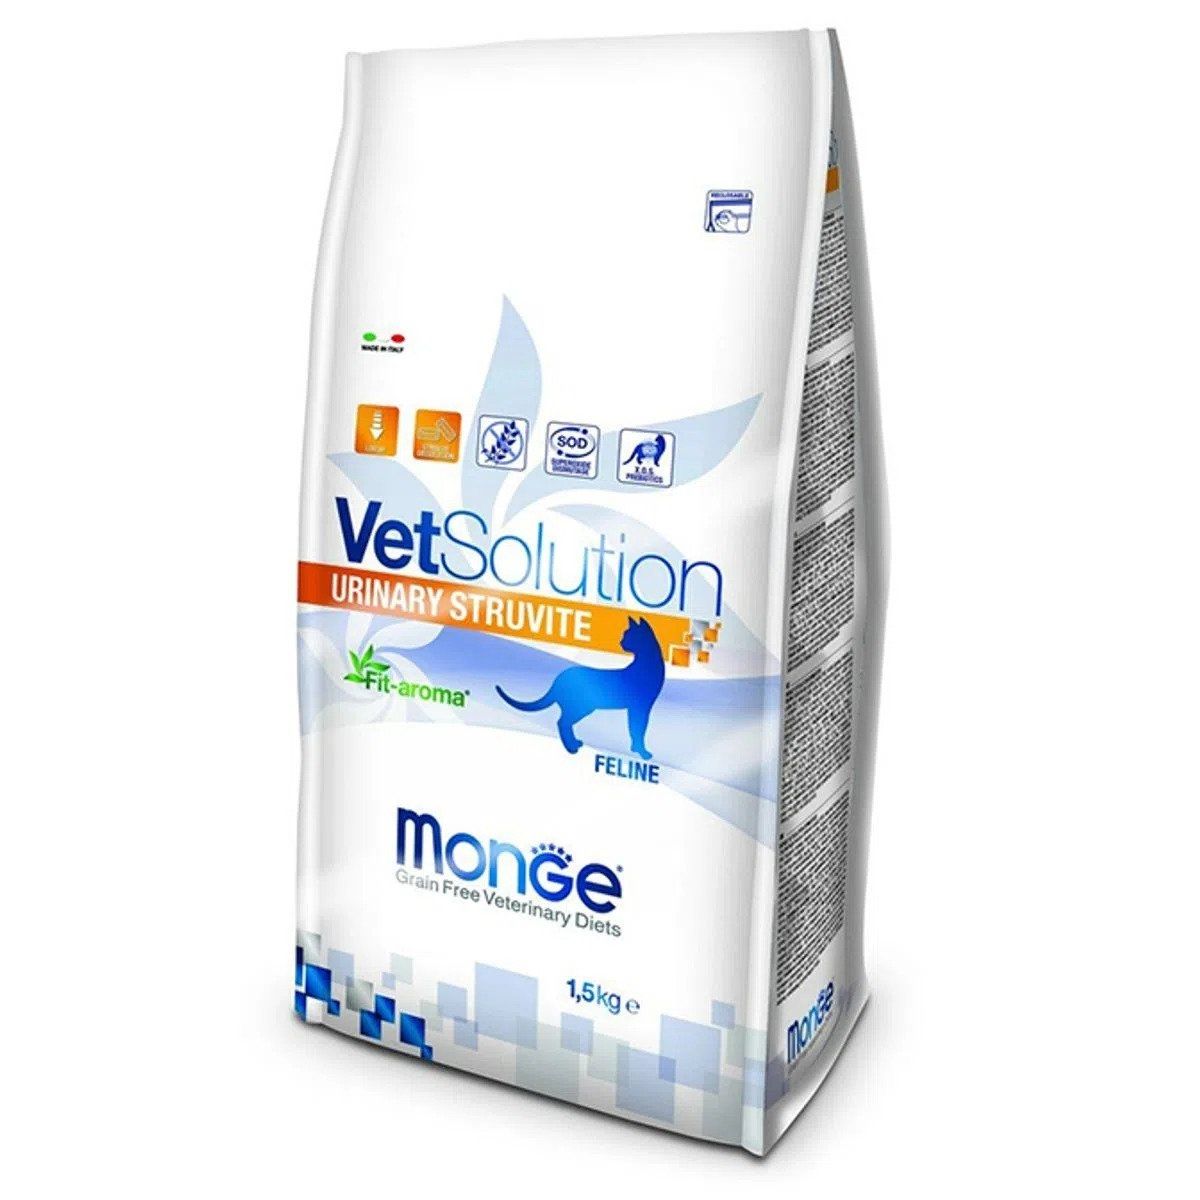 Monge Vetsolution Urinary Struvite Feline, 1.5 kg 1.5